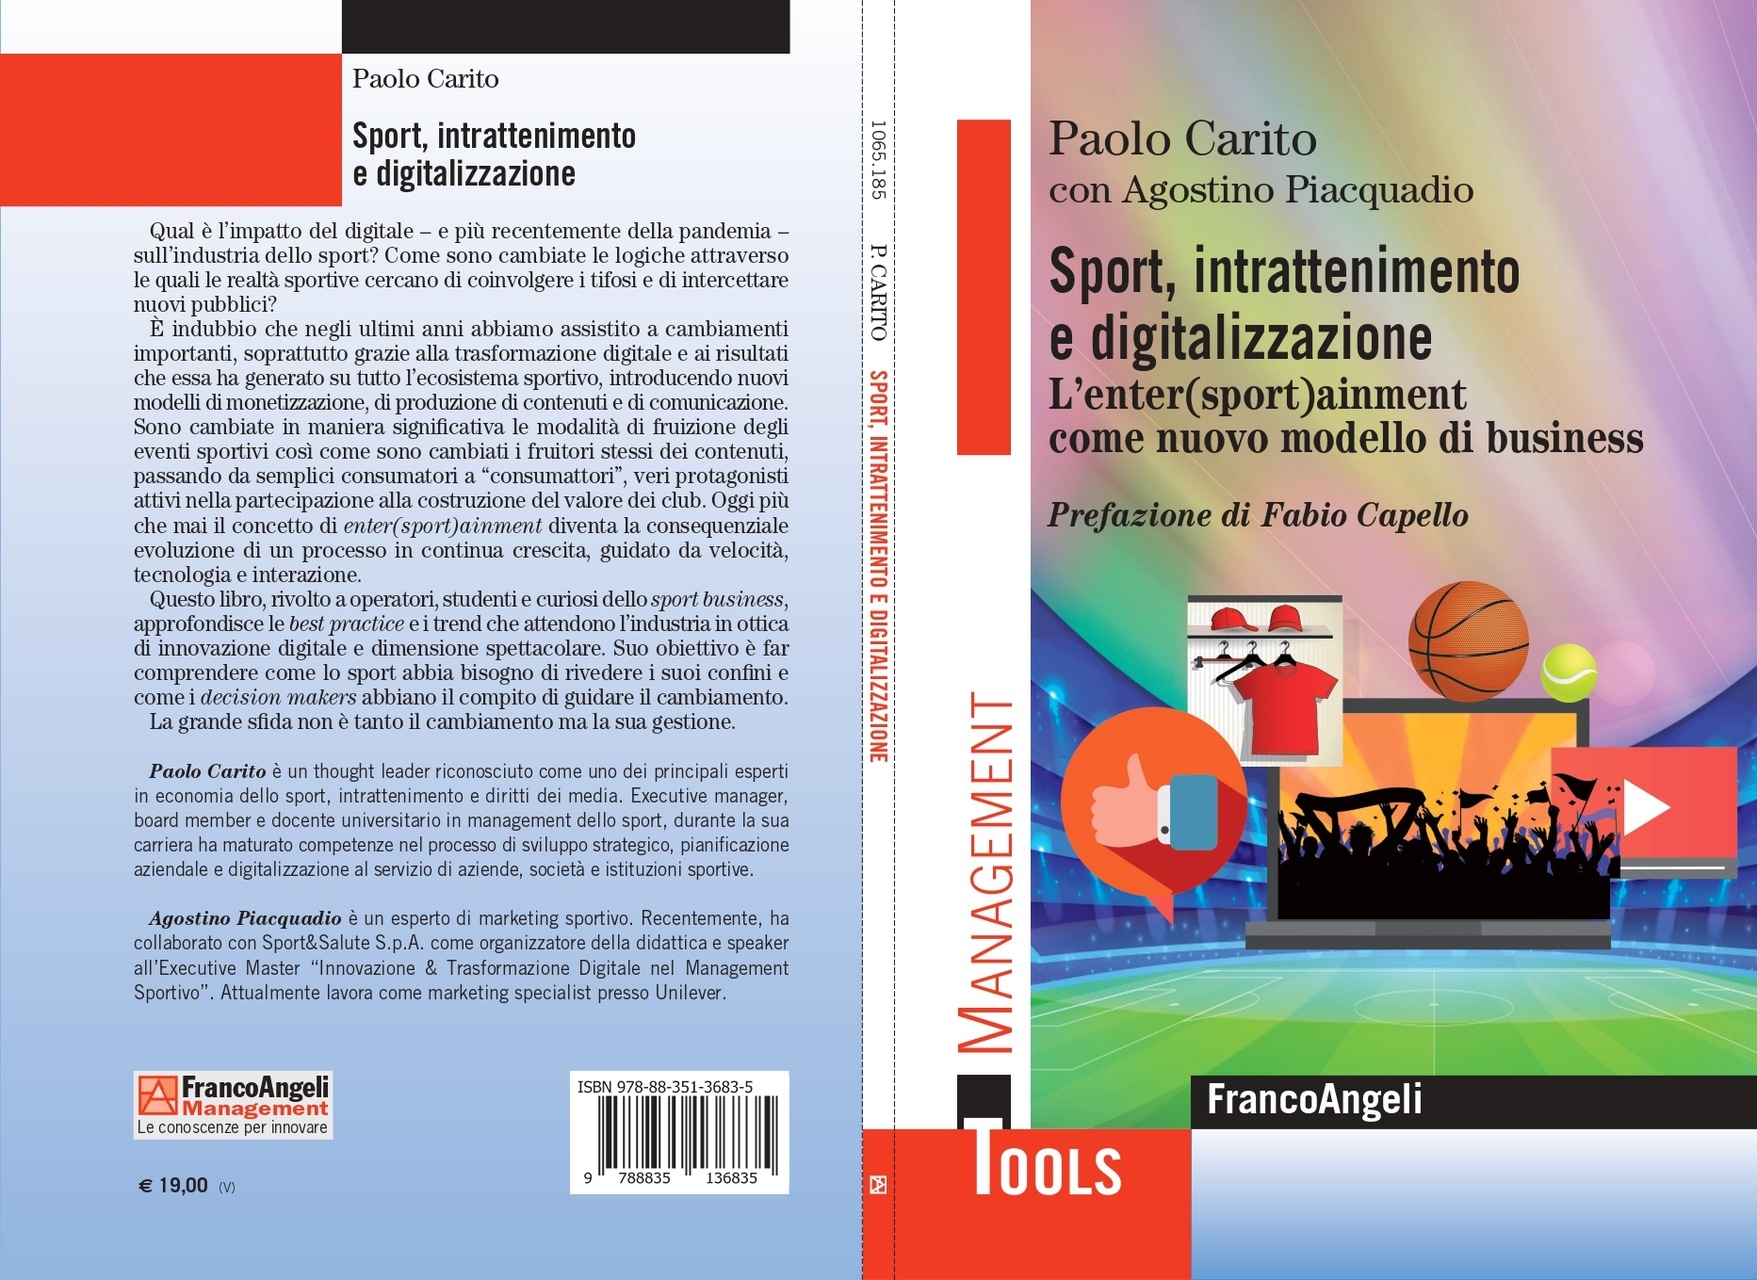 entersportainment: a „Sport, szórakozás és digitalizálás. Enter(sport)ainment, mint új üzleti modell”, írta Paolo Carito, Agostino Piacquadioval, és kiadó: Franco Angeli Editore